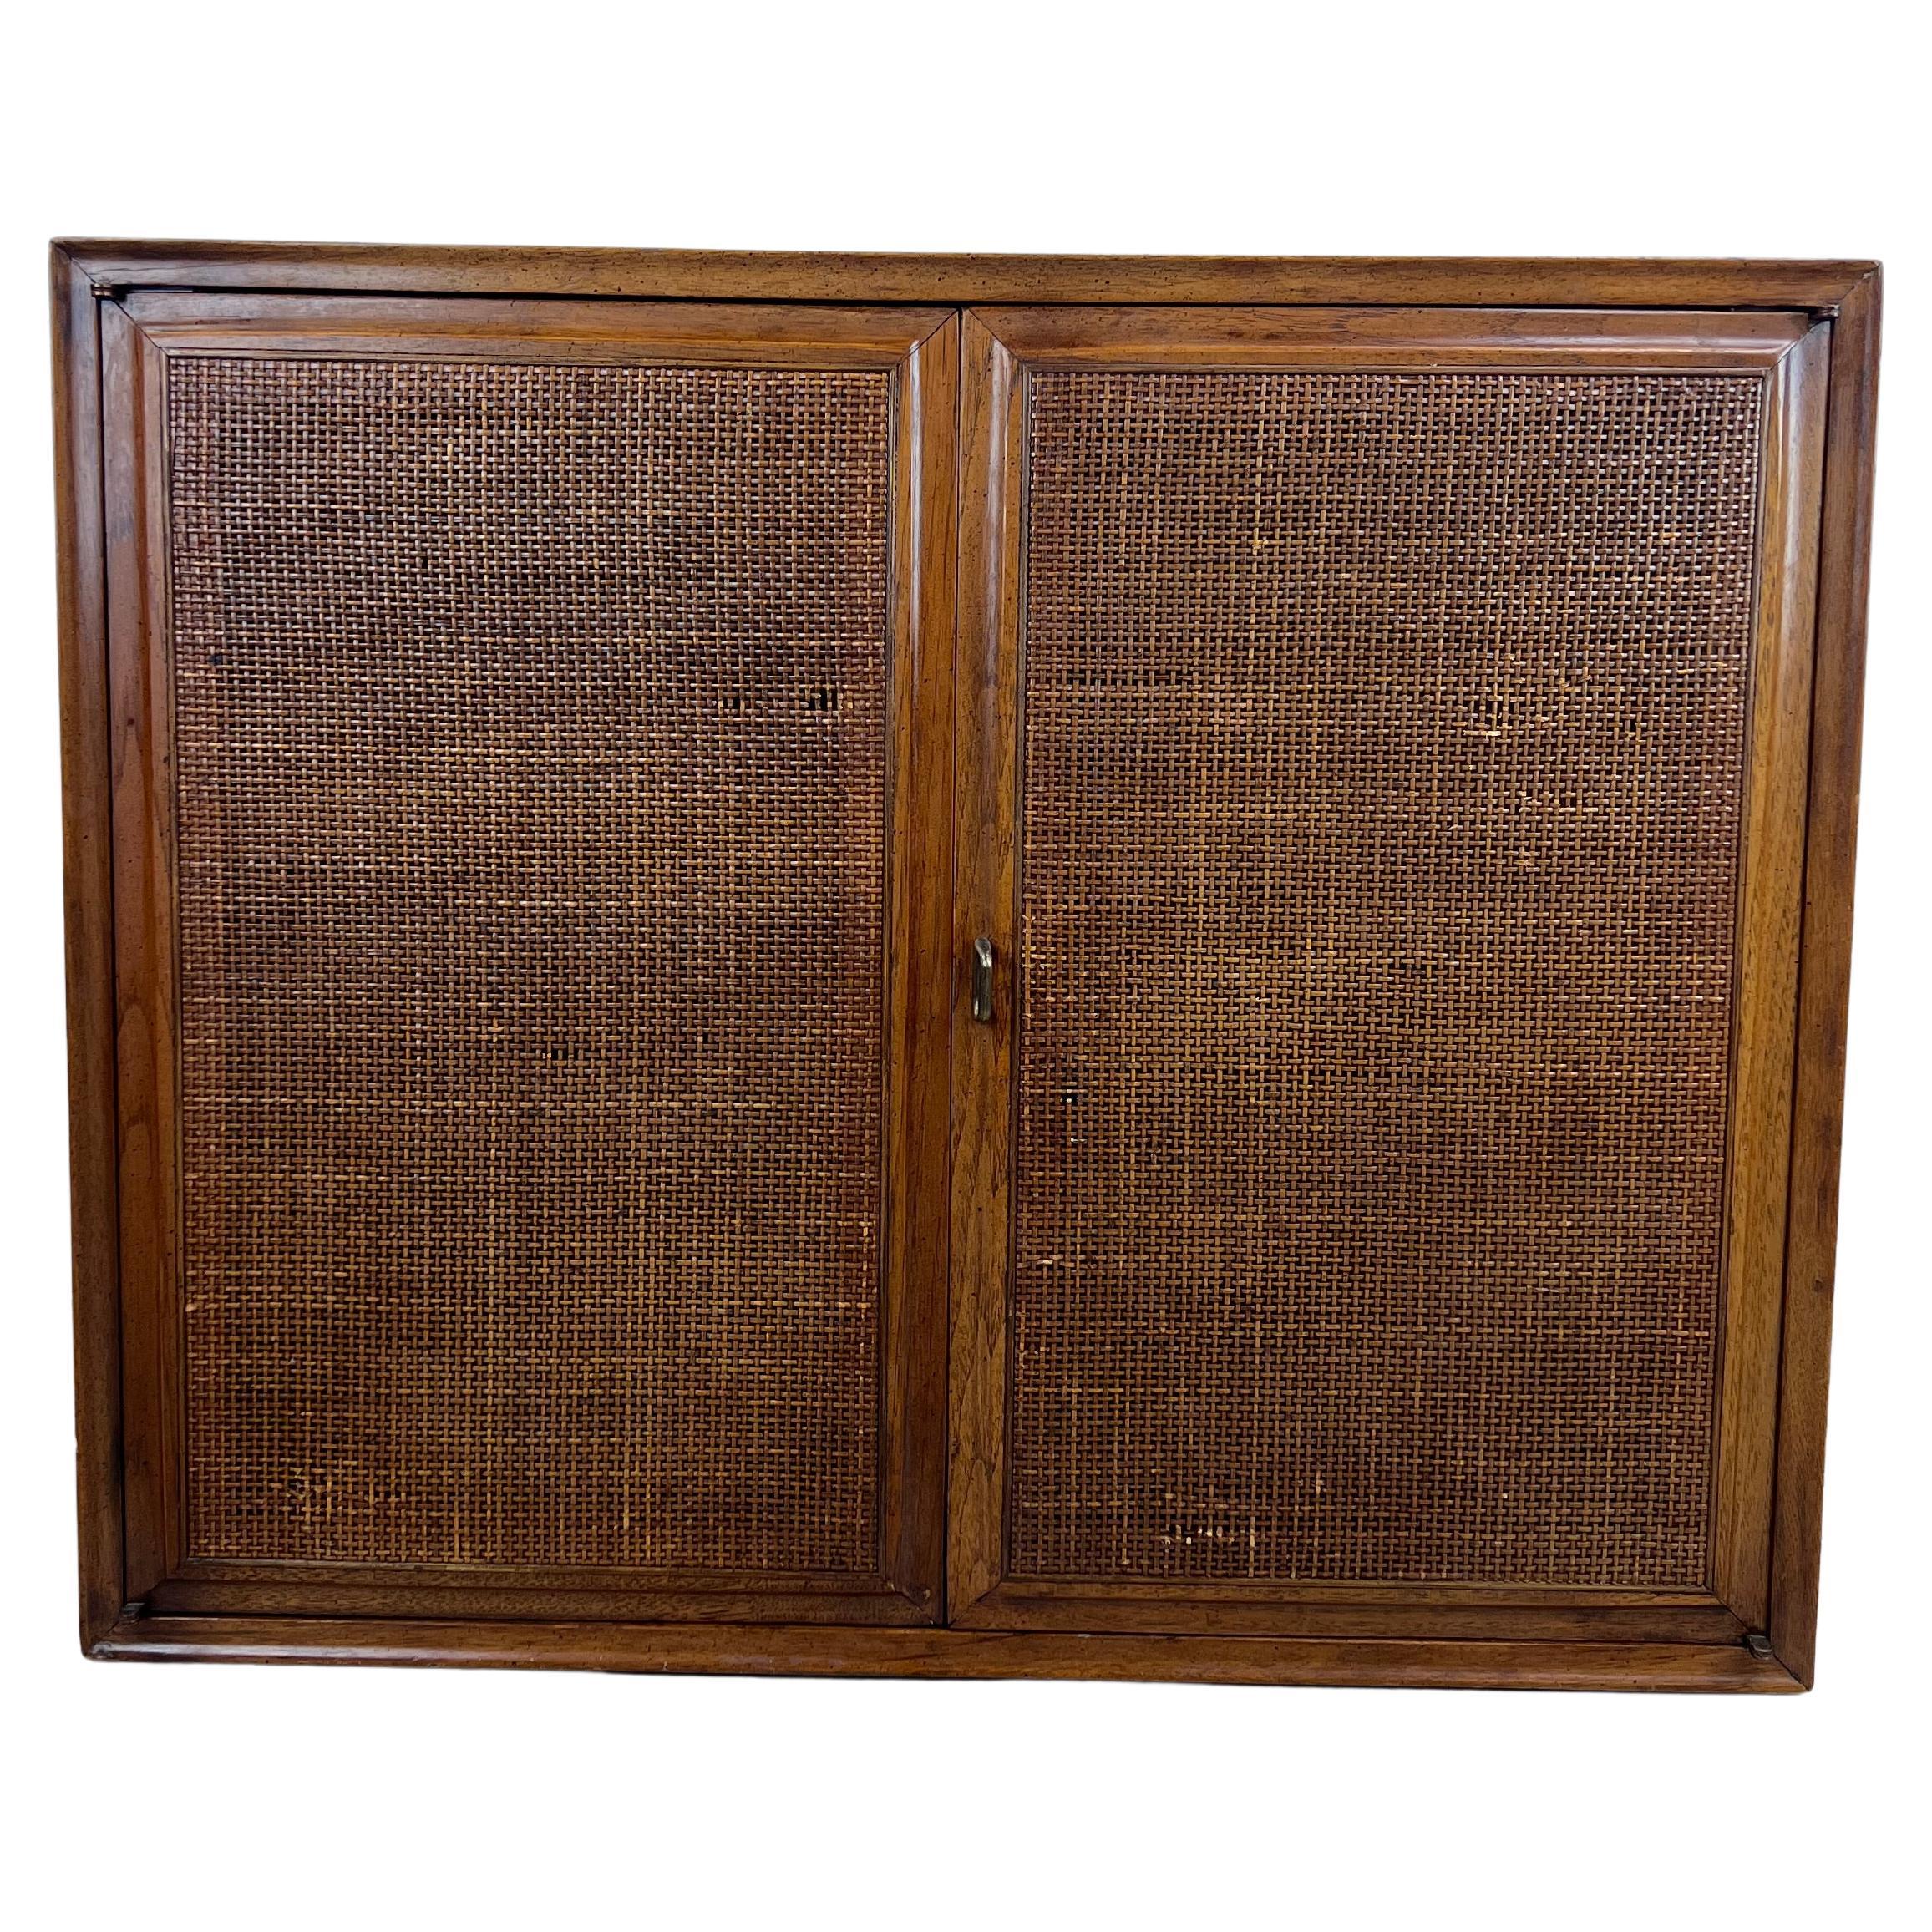 The MODERNS Modernity Cabinet à deux portes avec étagères réglables et portes en forme de canne